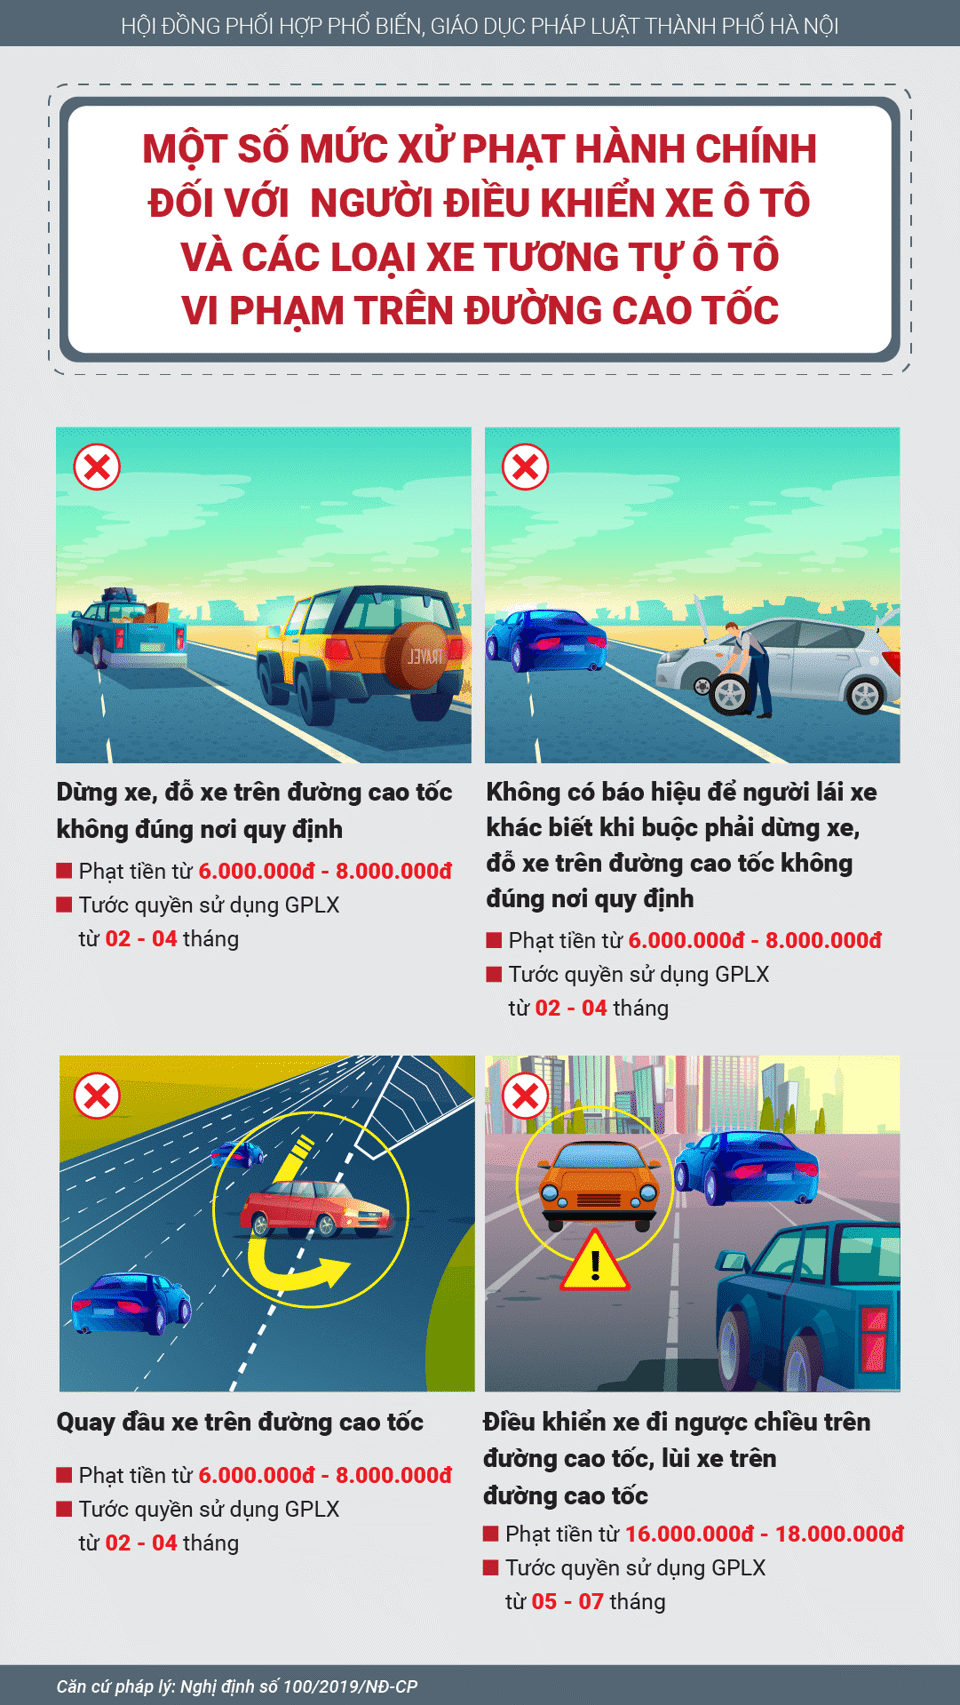 [Infographic] Vi phạm trên đường cao tốc, mức phạt thế nào? - Ảnh 2